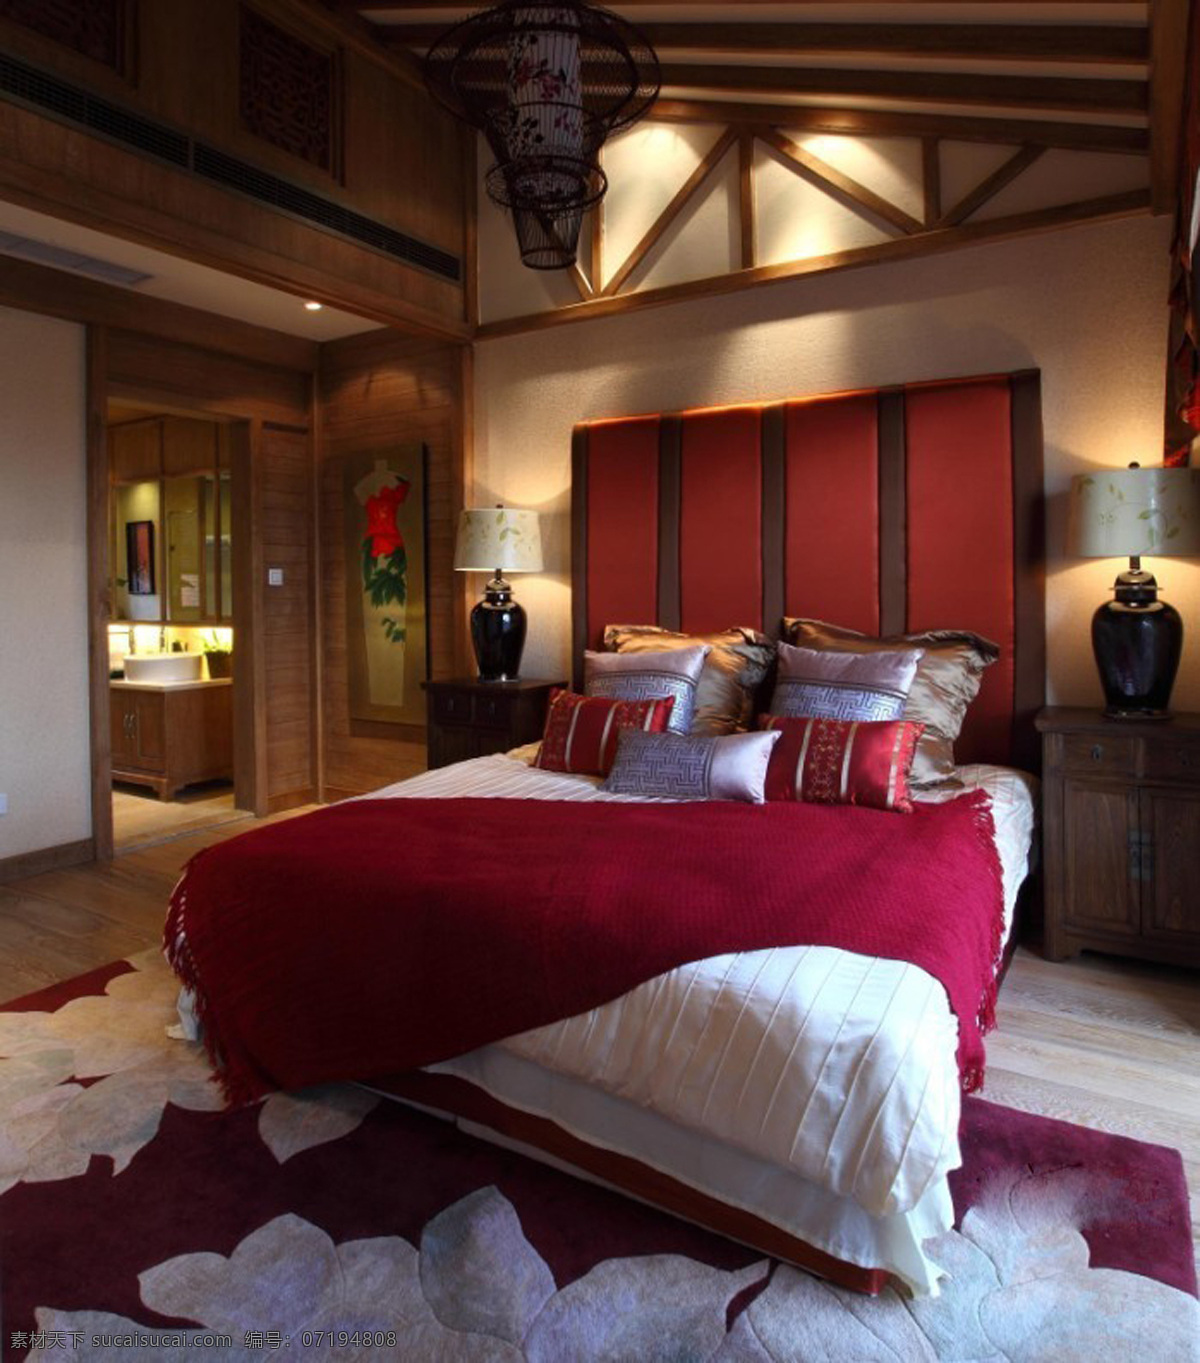 室内设计 床 凳子 电视 吊灯 环境设计 双人床 桌子 家居装饰素材